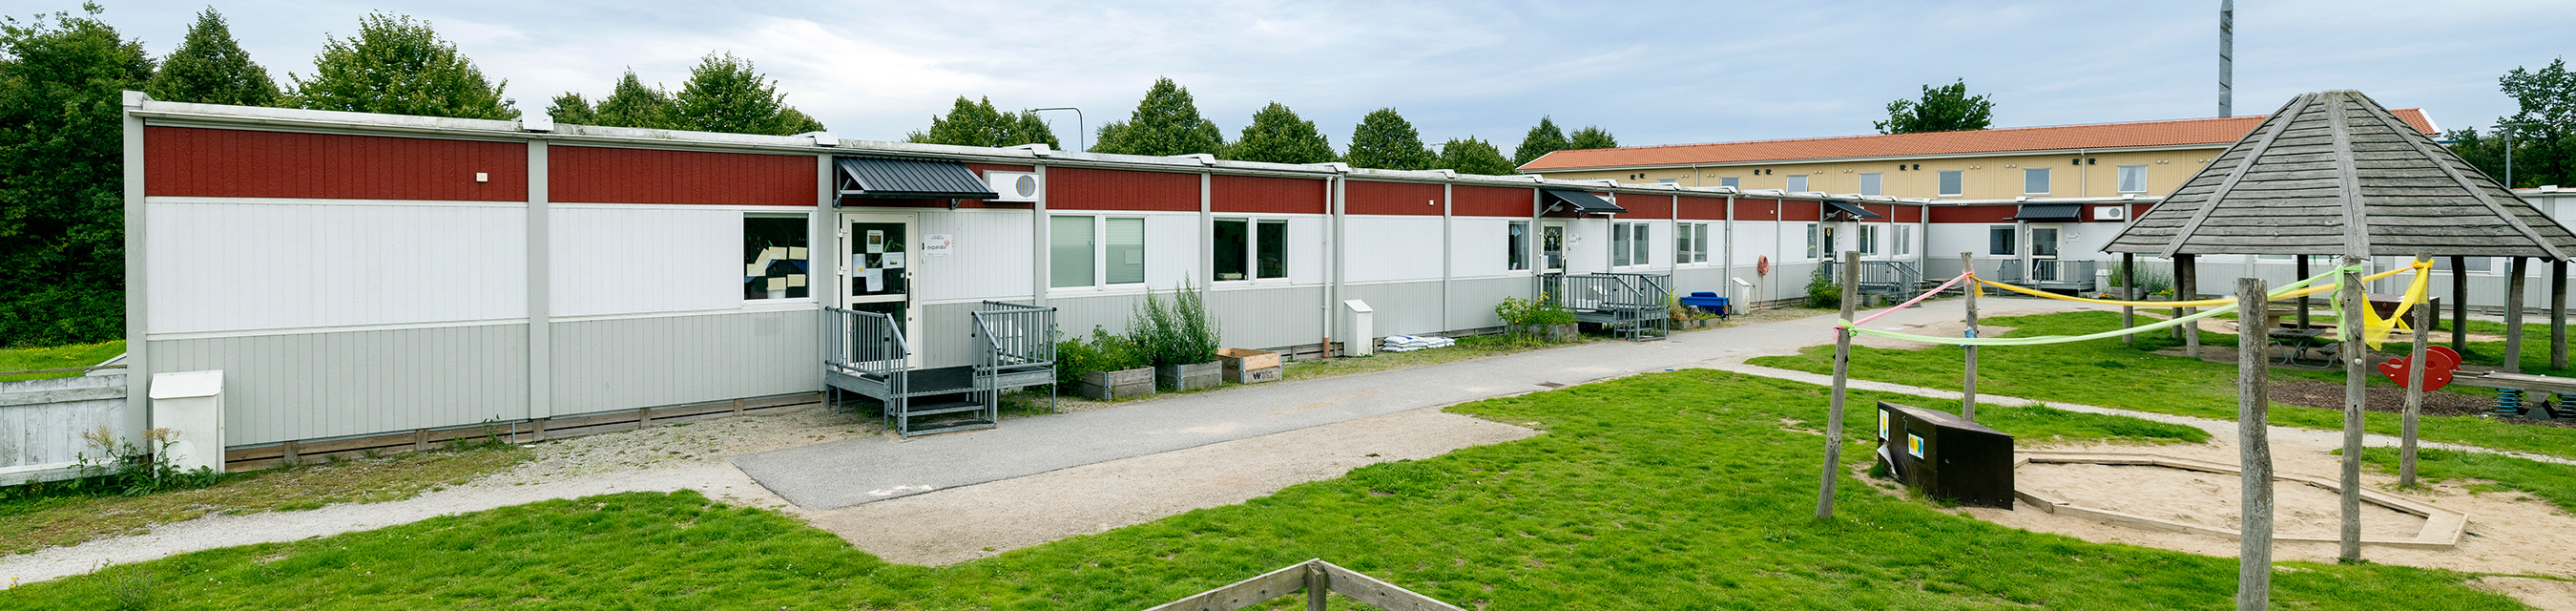 Sommarängens förskola är byggd i ett plan och har tre avdelningar. 